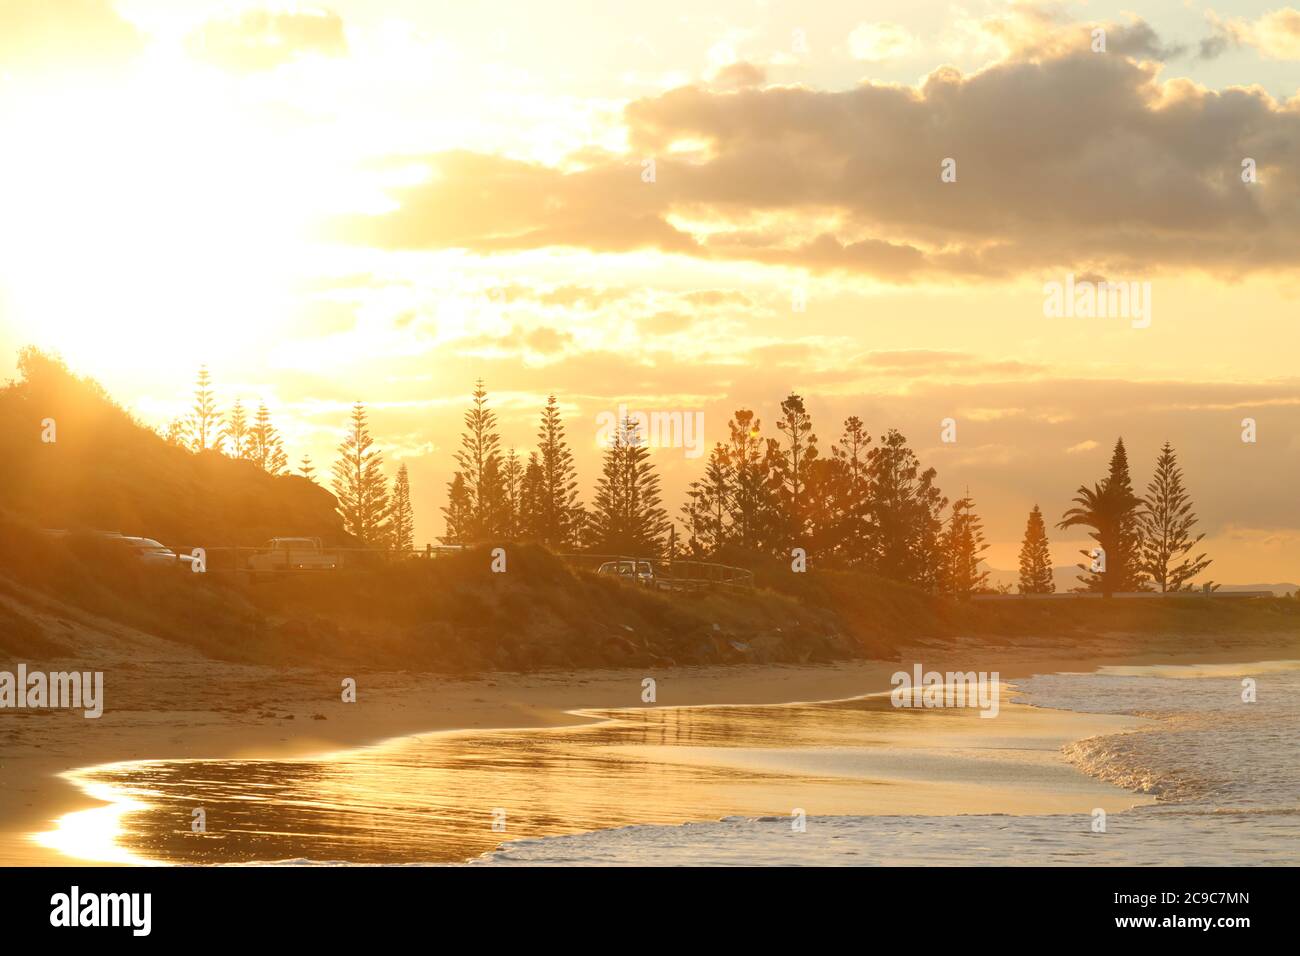 Town Beach, Port Macquarie an der Nordküste von New South Wales, Australien. Wunderschöner goldener Sonnenuntergang an einem Surfstrand an der Küste. Sonne und Brandung. Reisen Stockfoto